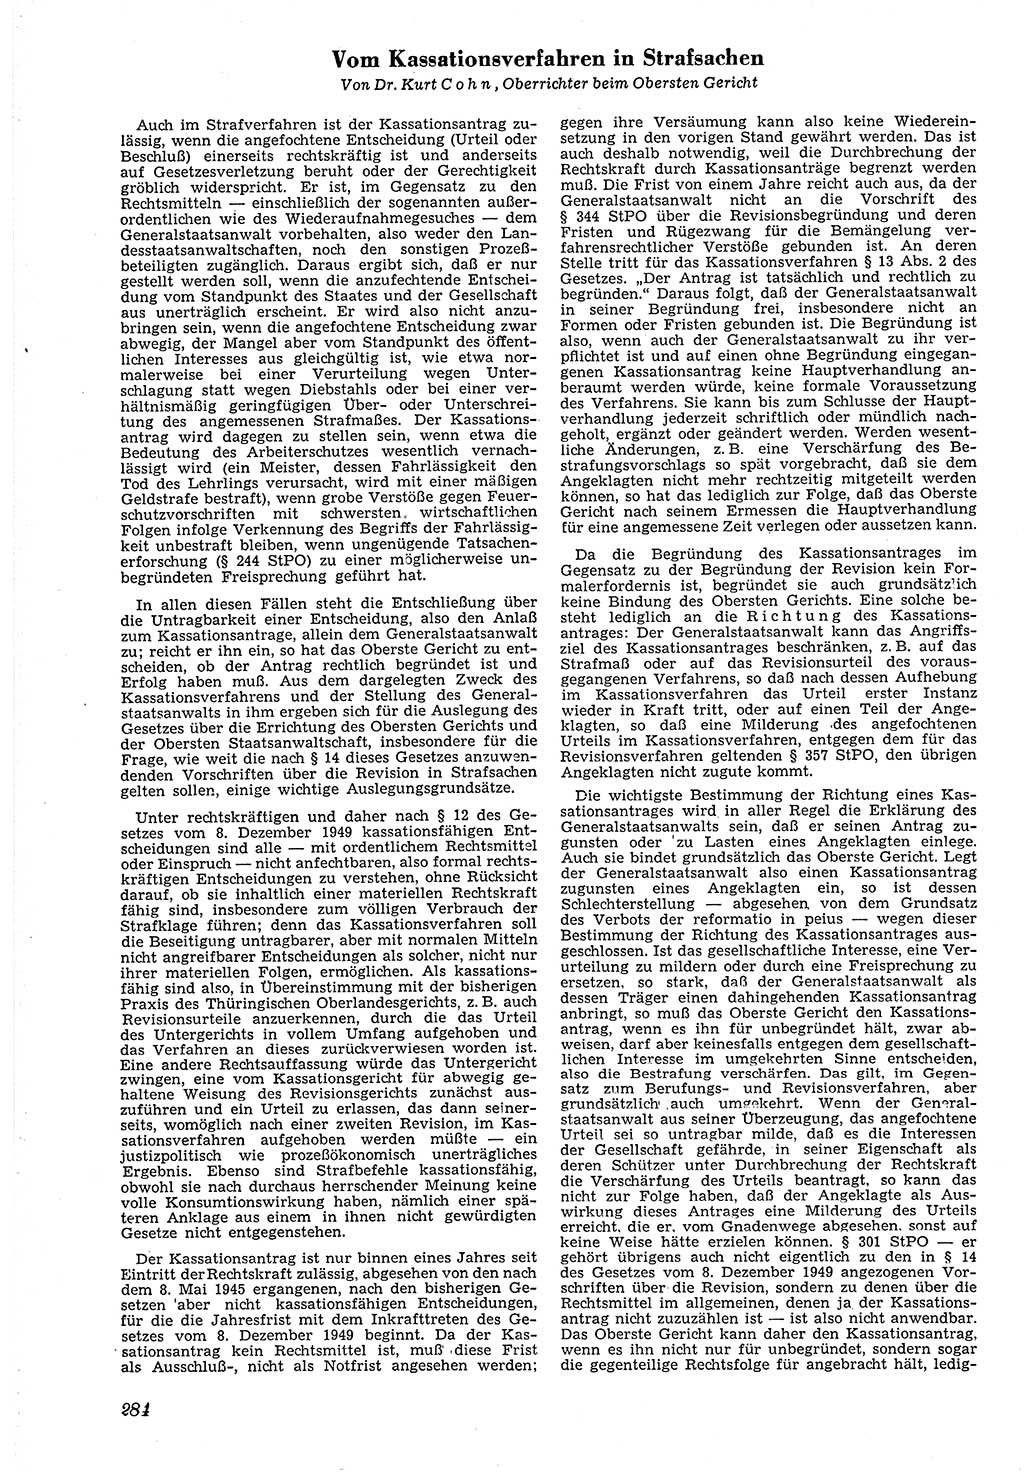 Neue Justiz (NJ), Zeitschrift für Recht und Rechtswissenschaft [Deutsche Demokratische Republik (DDR)], 4. Jahrgang 1950, Seite 284 (NJ DDR 1950, S. 284)